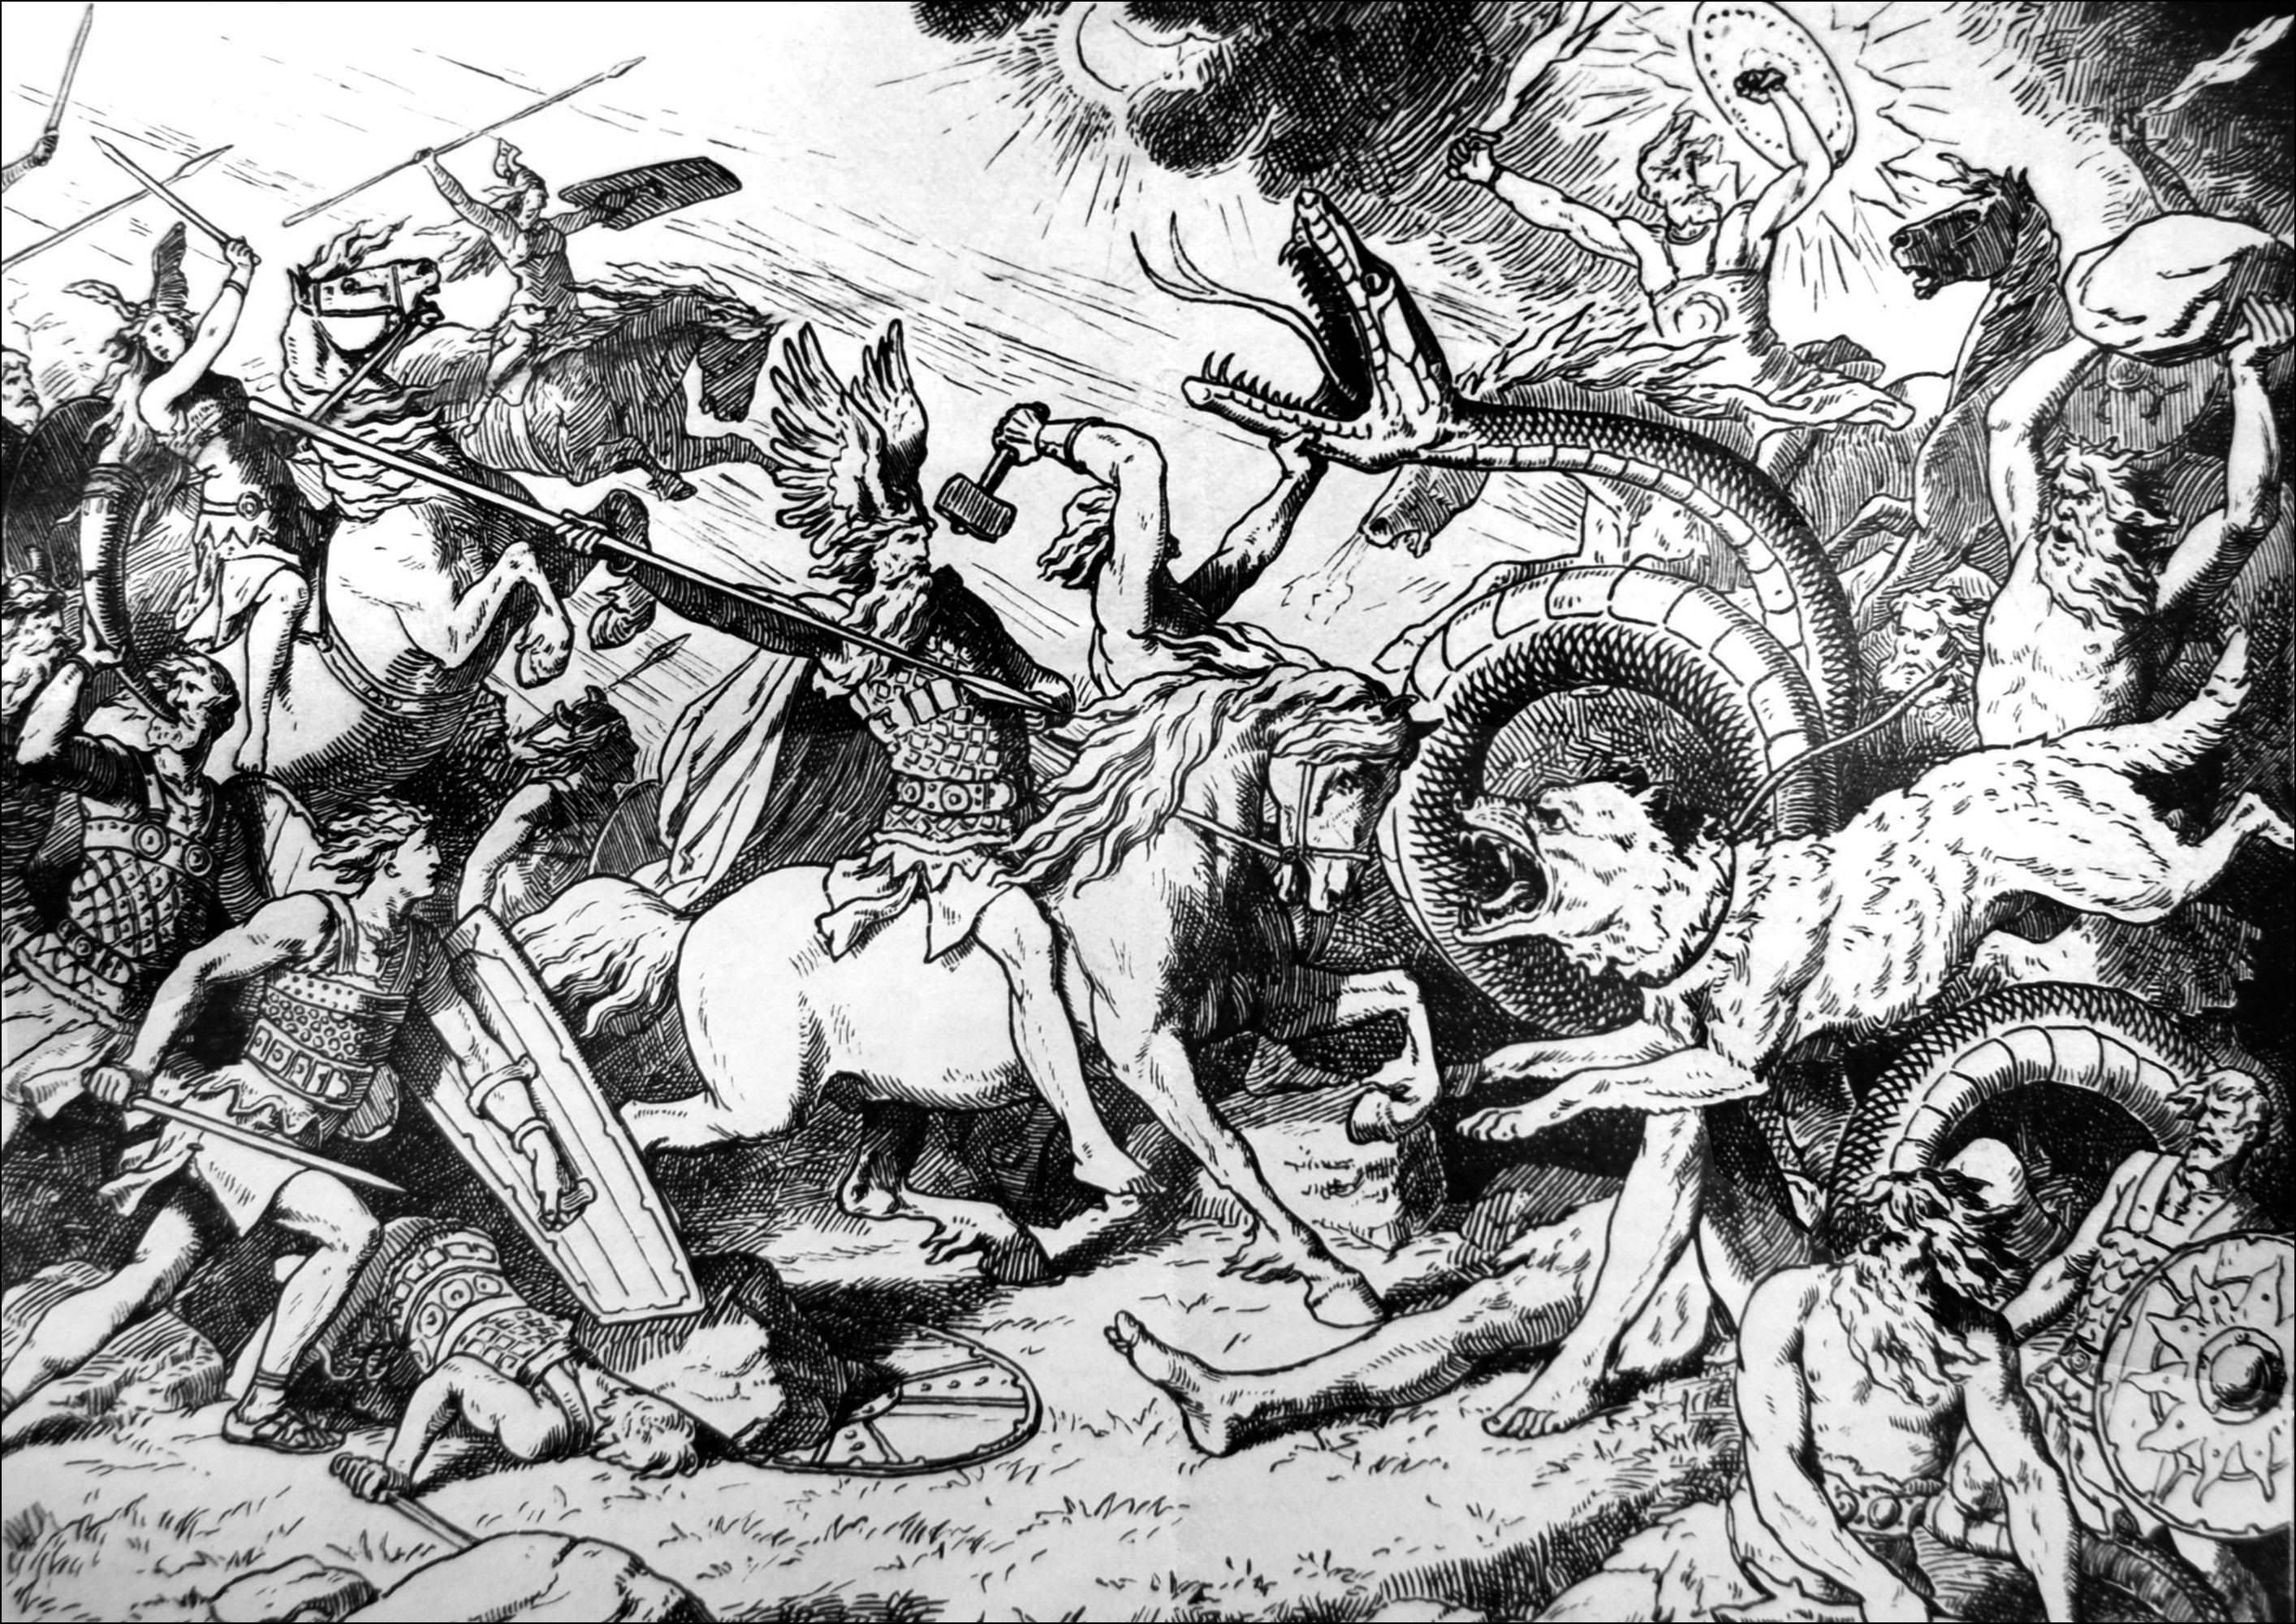 Ragnarok, el día del juicio final vikingo - ilustración de Johannes Gehrts (1855, 1921). El Ragnarök es el apocalipsis de la mitología nórdica. Se